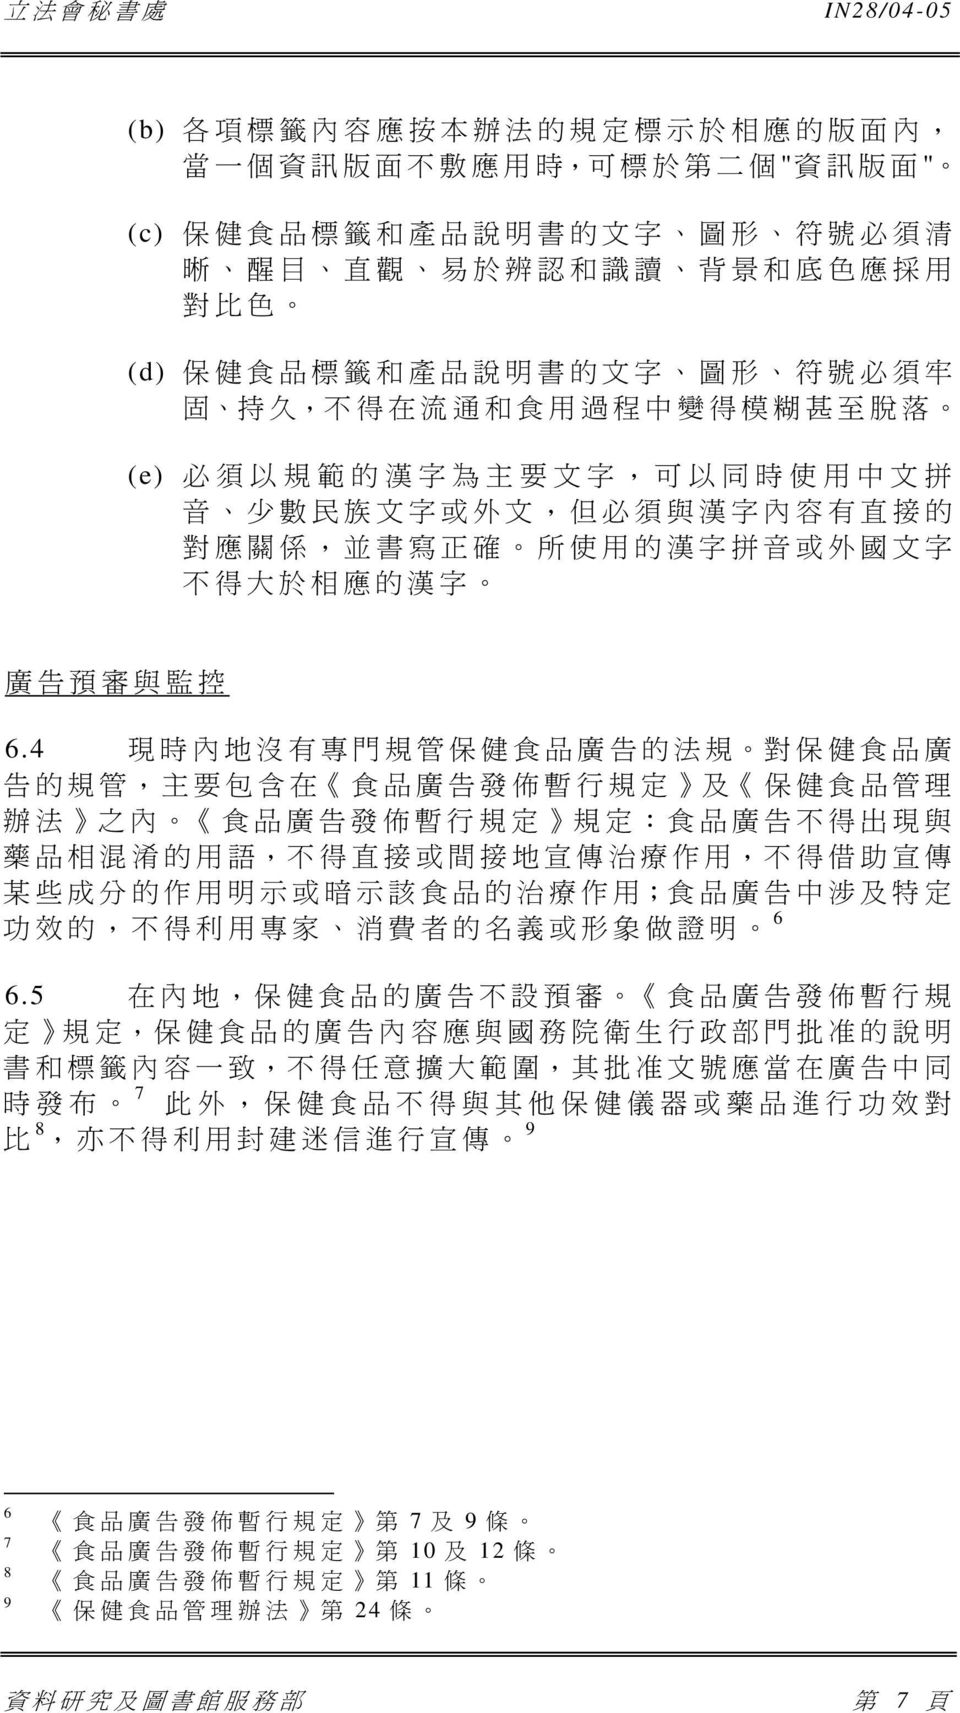 所 使 用 的 漢 字 拼 音 或 外 國 文 字 不 得 大 於 相 應 的 漢 字 廣 告 預 審 與 監 控 6.